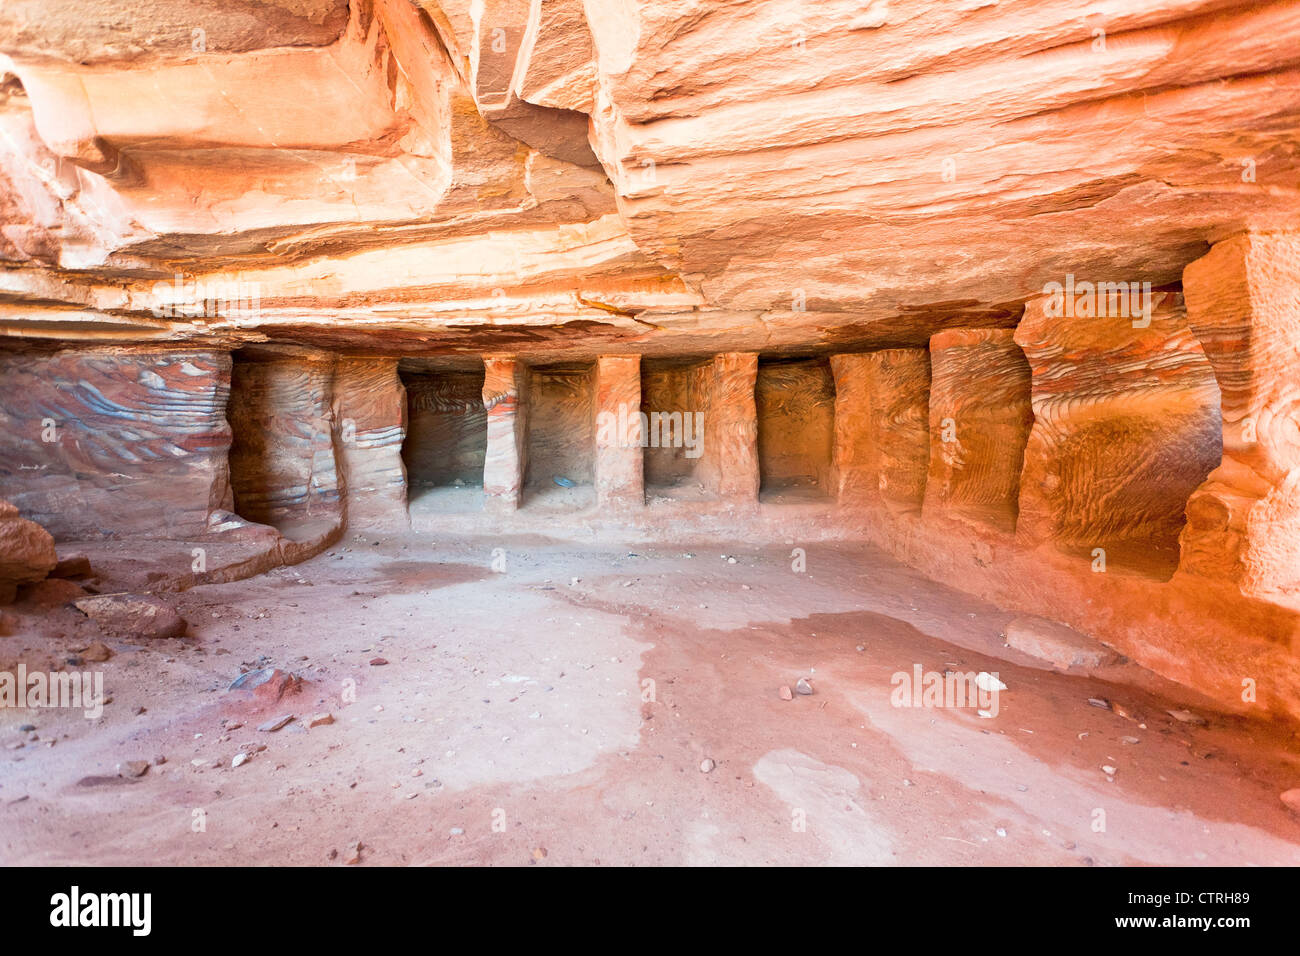 Interior de tumba antigua o de la vivienda en cueva de piedra arenisca en Petra, Jordania Foto de stock